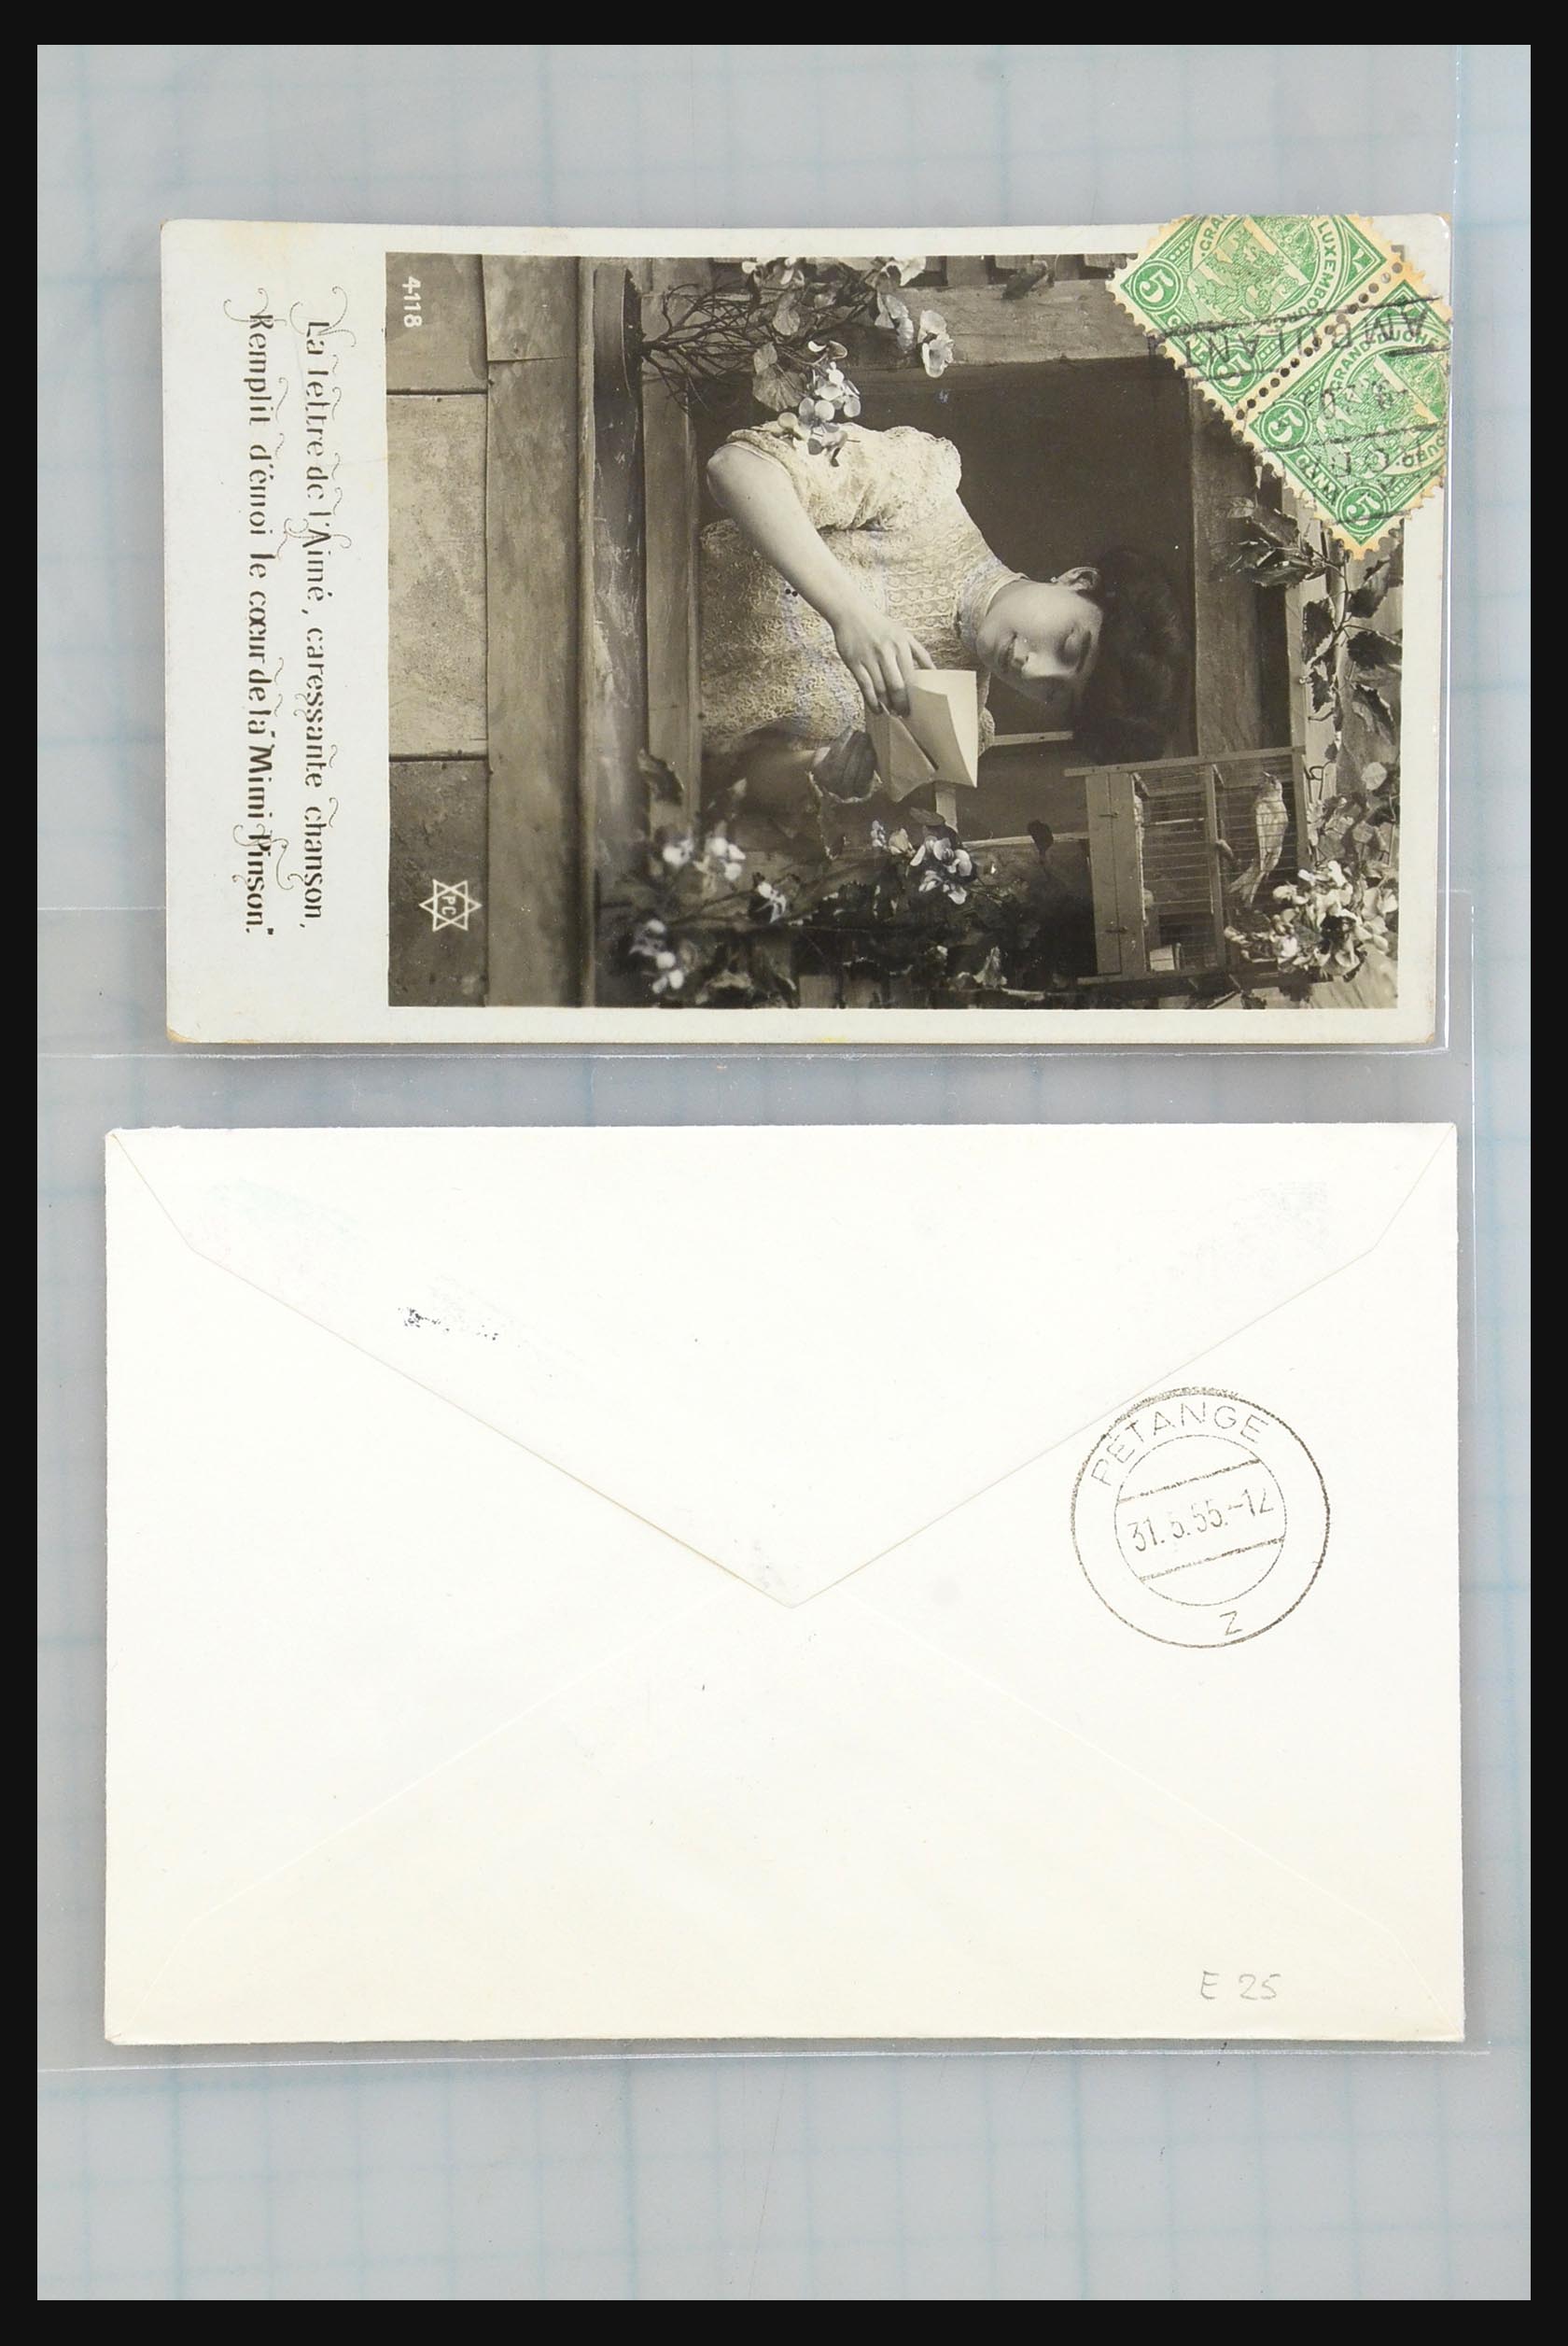 31358 182 - 31358 Portugal/Luxemburg/Griekenland brieven 1880-1960.